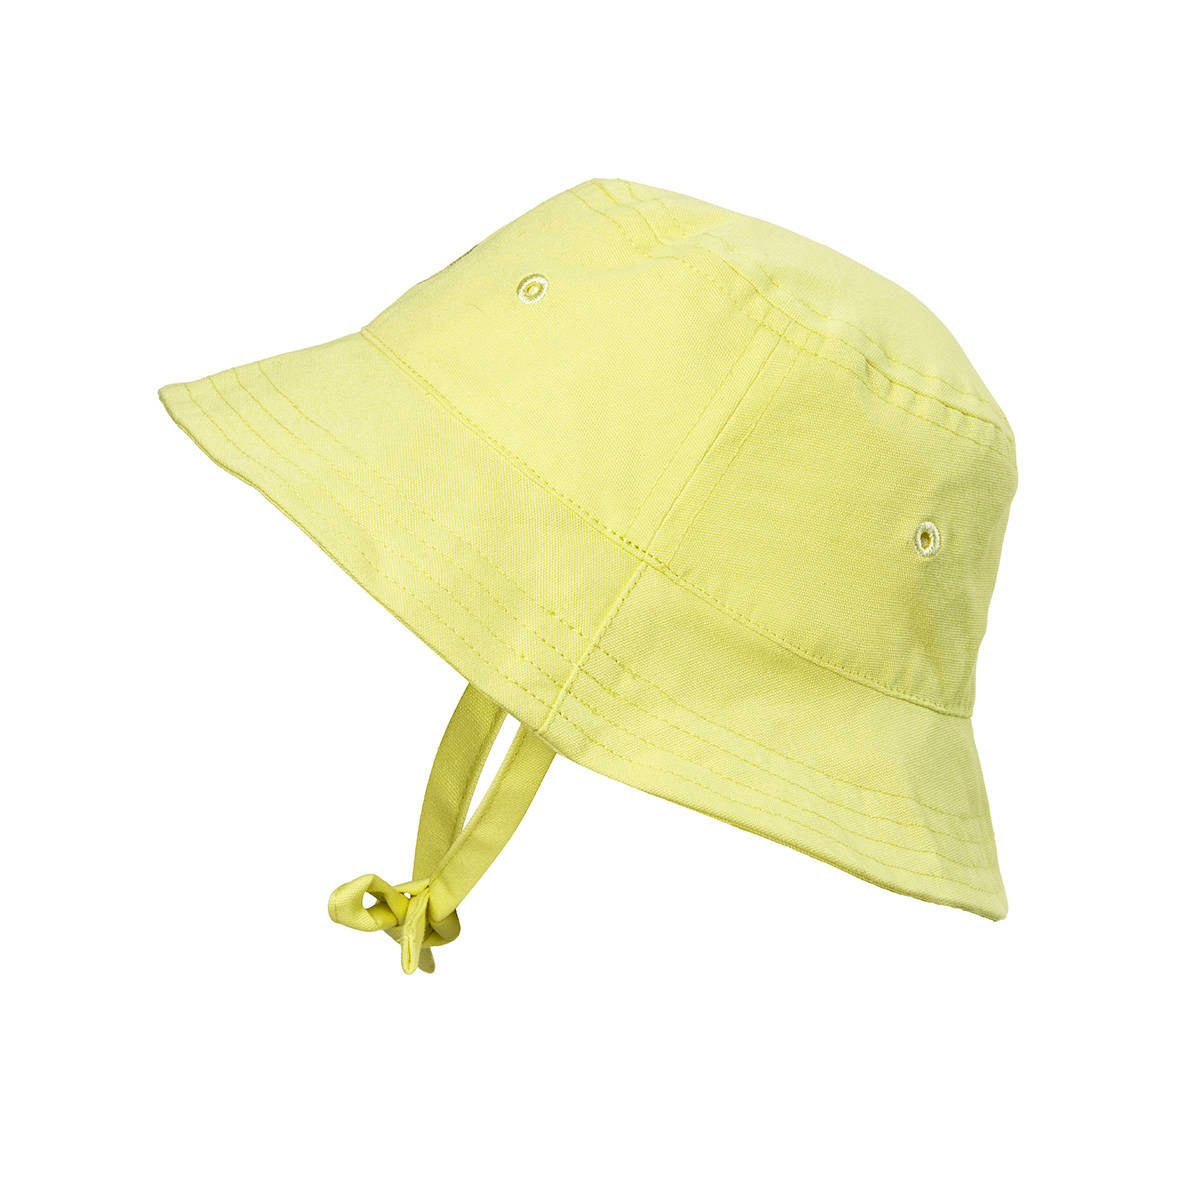 Kapelusz Bucket Elodie Details Sunny Day Yellow SPF 30 dla 2-3 latka, wiązany, wygodny i stylowy na lato.